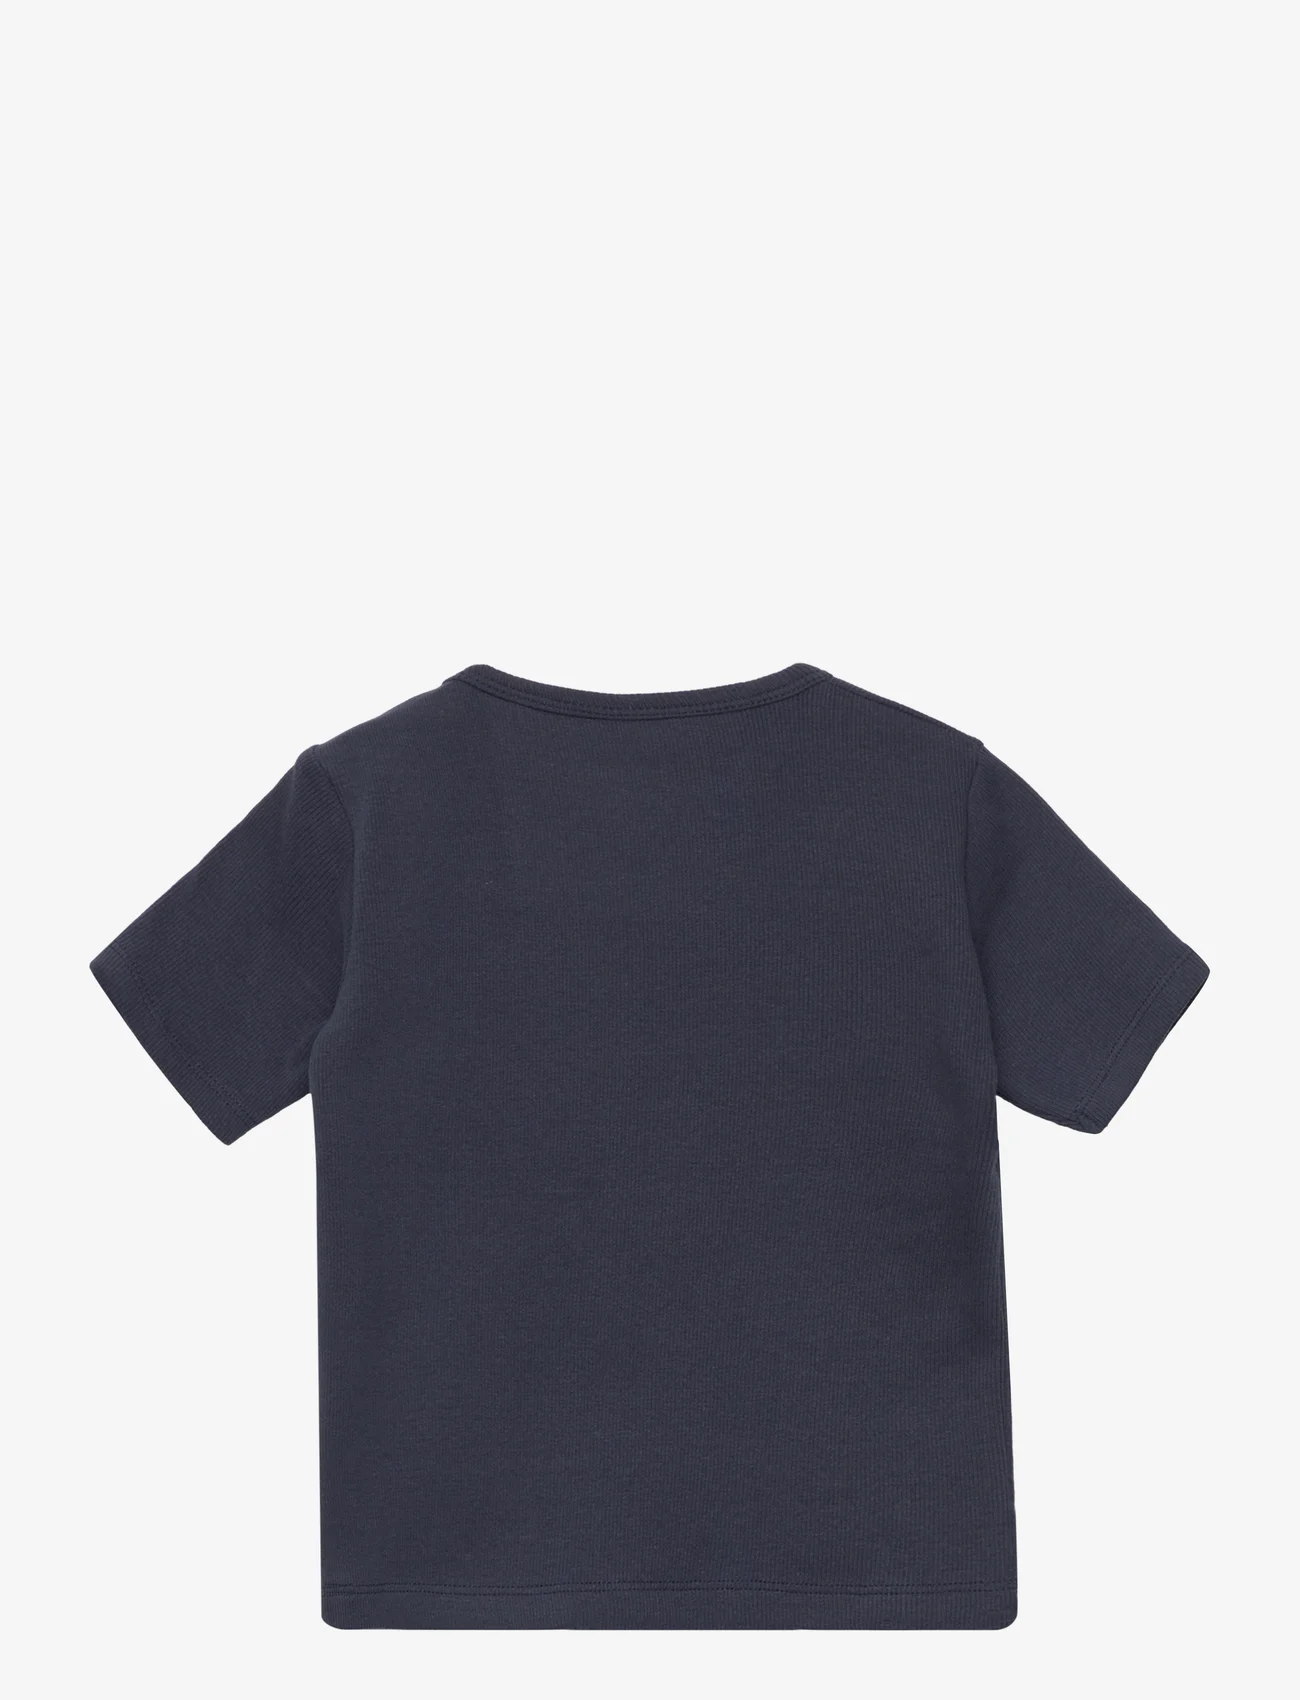 Sofie Schnoor Baby and Kids - T-shirt - kortærmede t-shirts - dark blue - 1